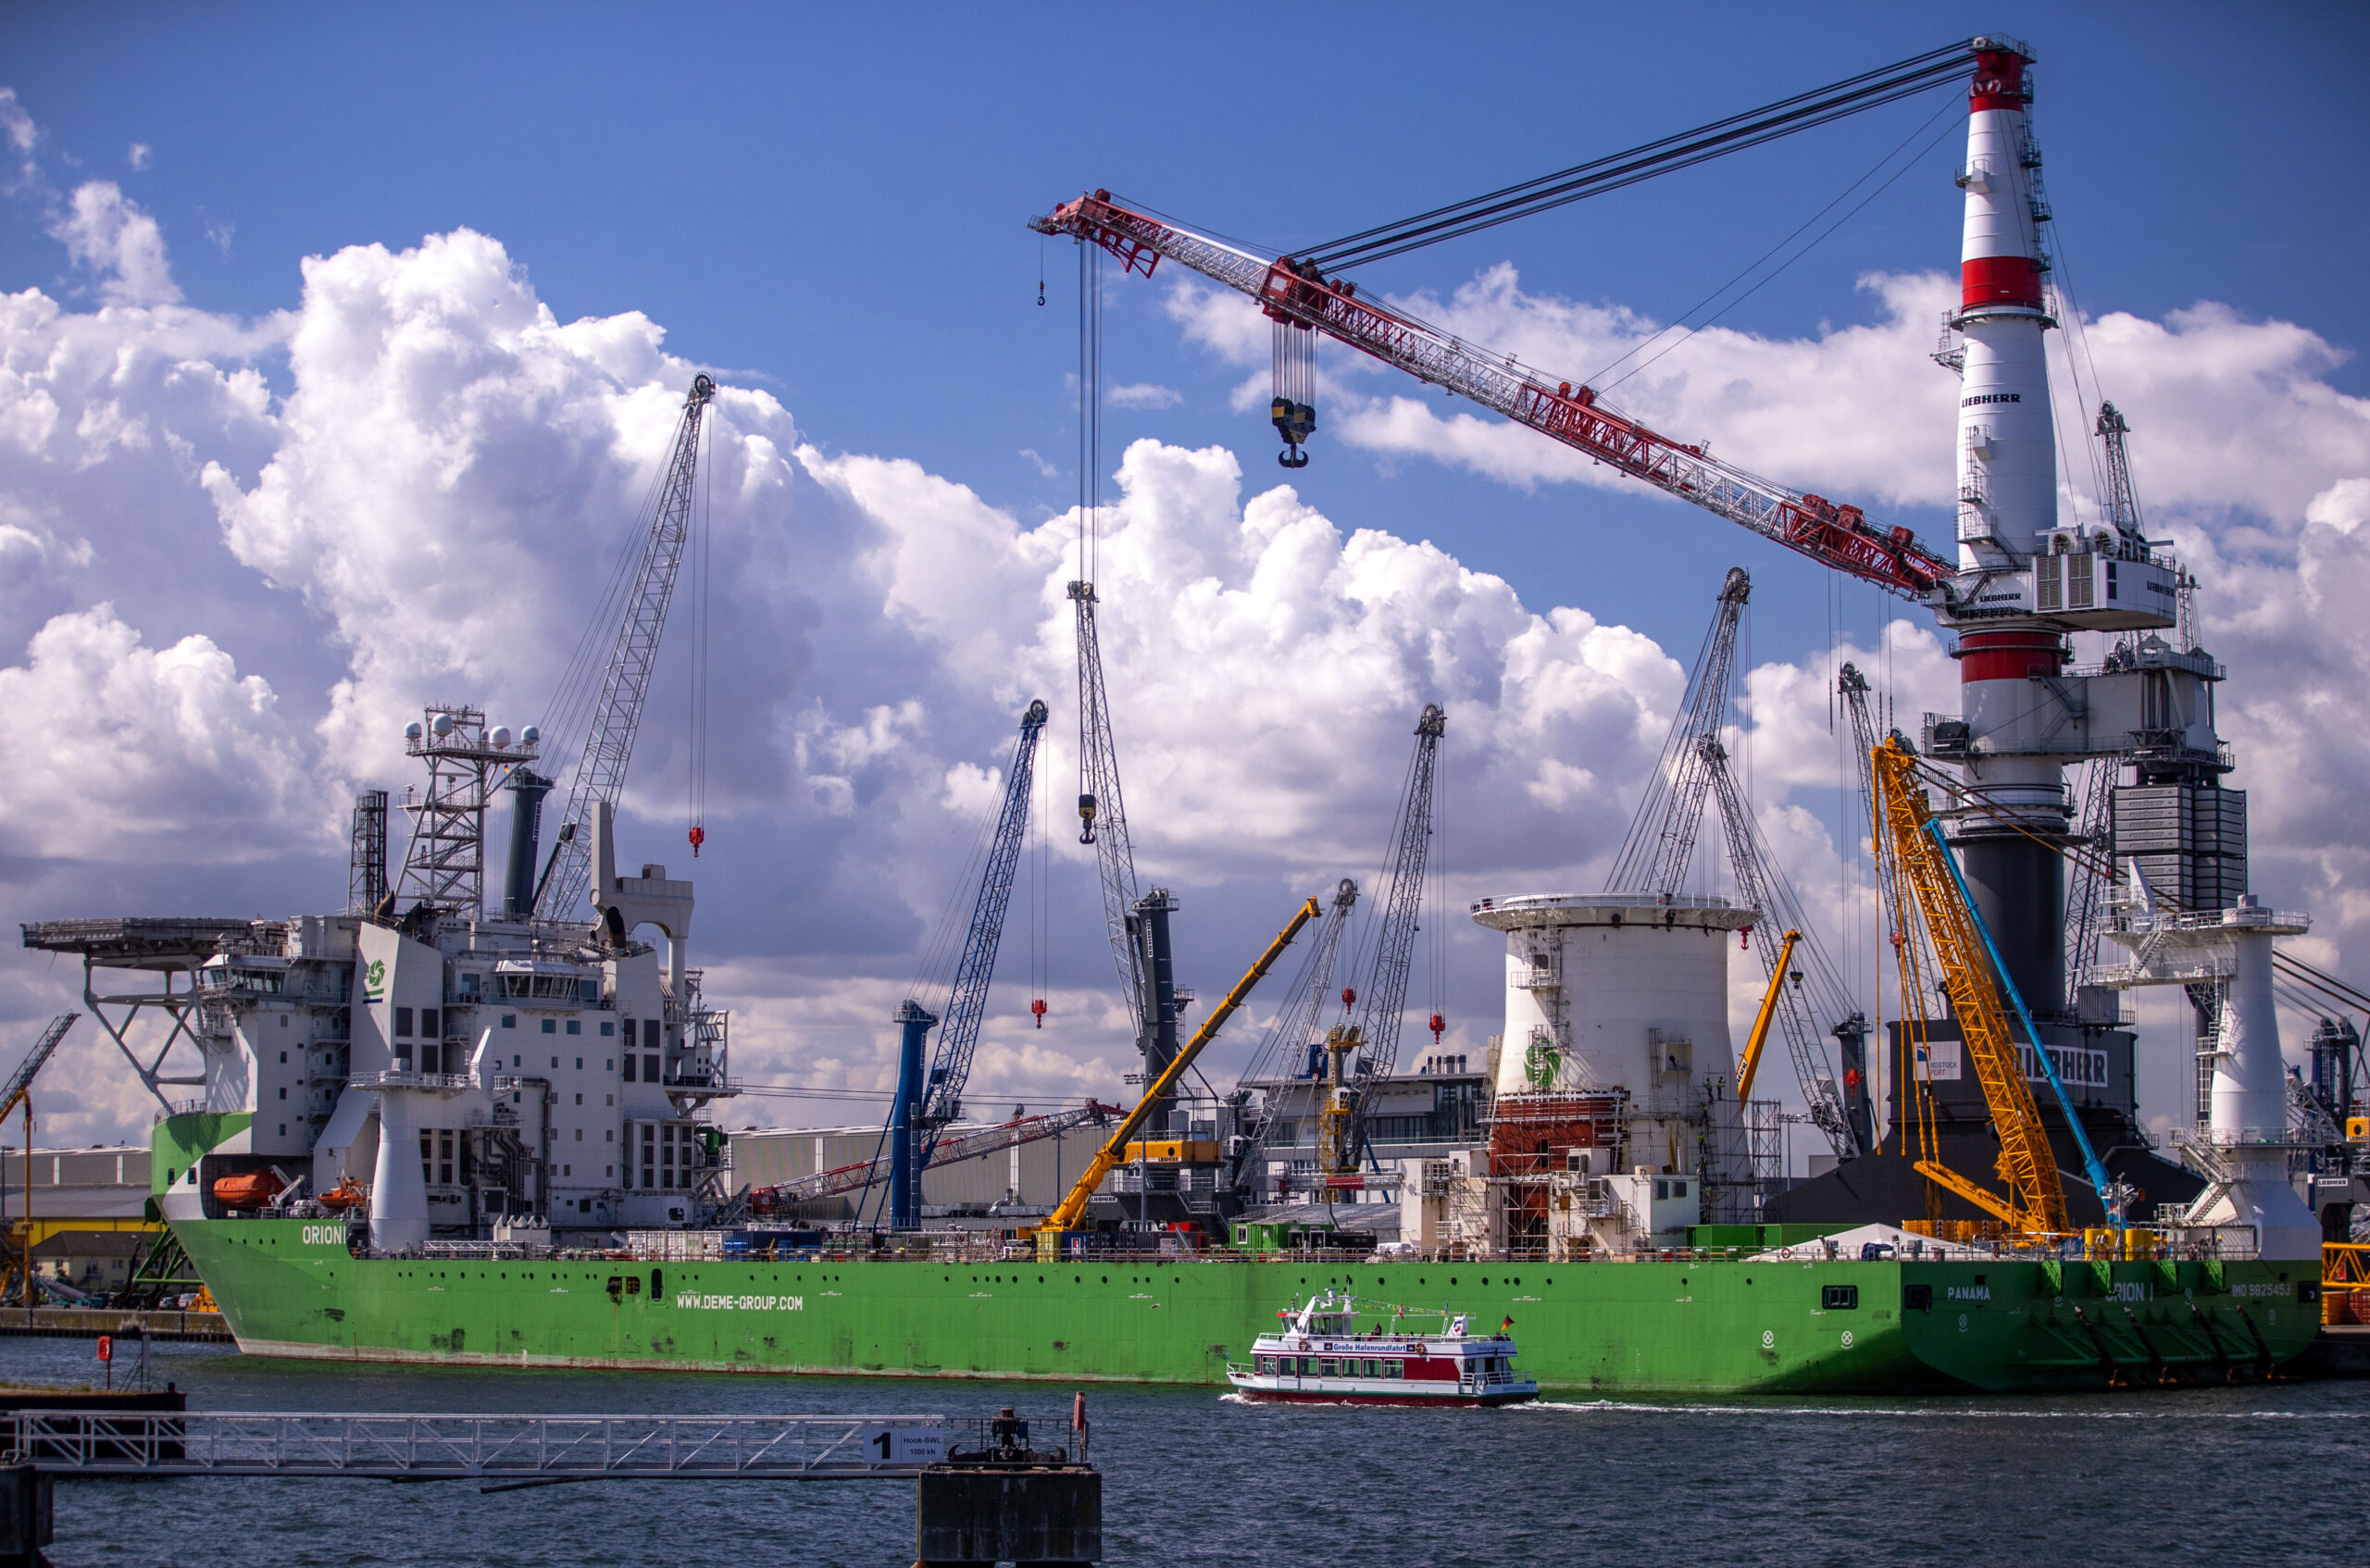 Der Rostocker Hafen ist Mecklenburg-Vorpommerns größtes Industriegebiet. Für knapp 22 Millionen Euro werden dort nun neue Liegeplätze gebaut.